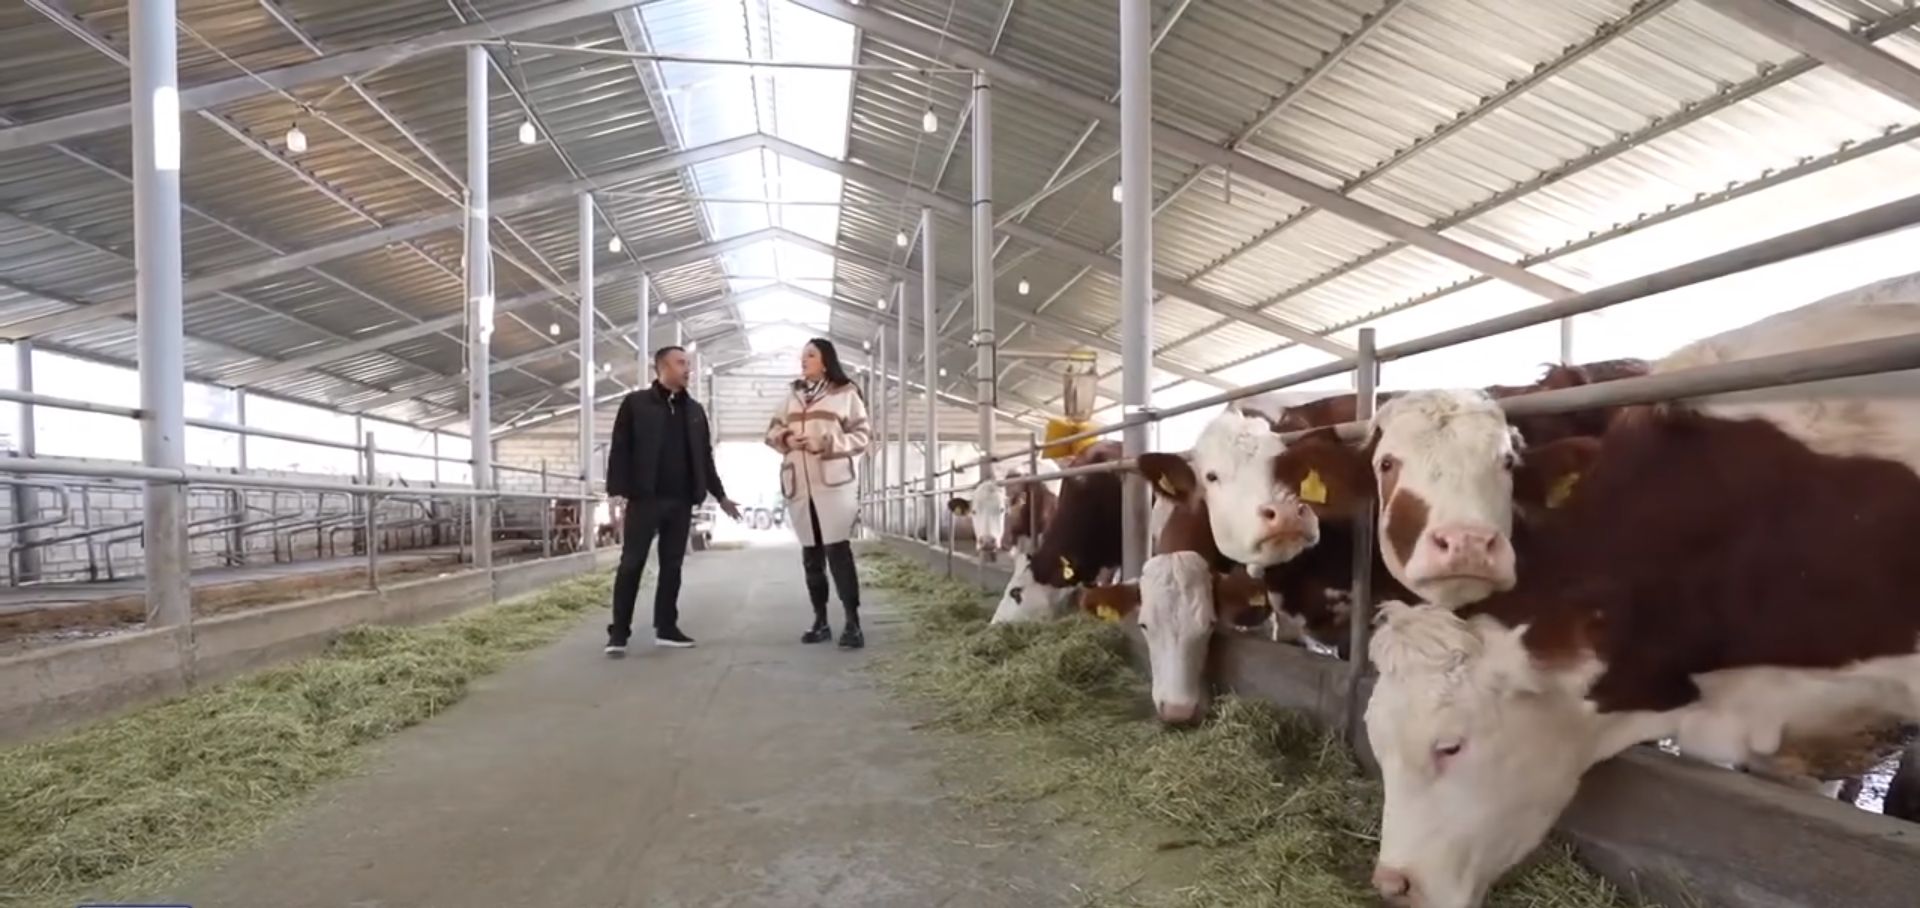 Գյուղաջակցության պետական ծրագրերով ֆերմերները փոխում են ավանդական անասնապահության մասին իրենց պատկերացումները (տեսանյութ)